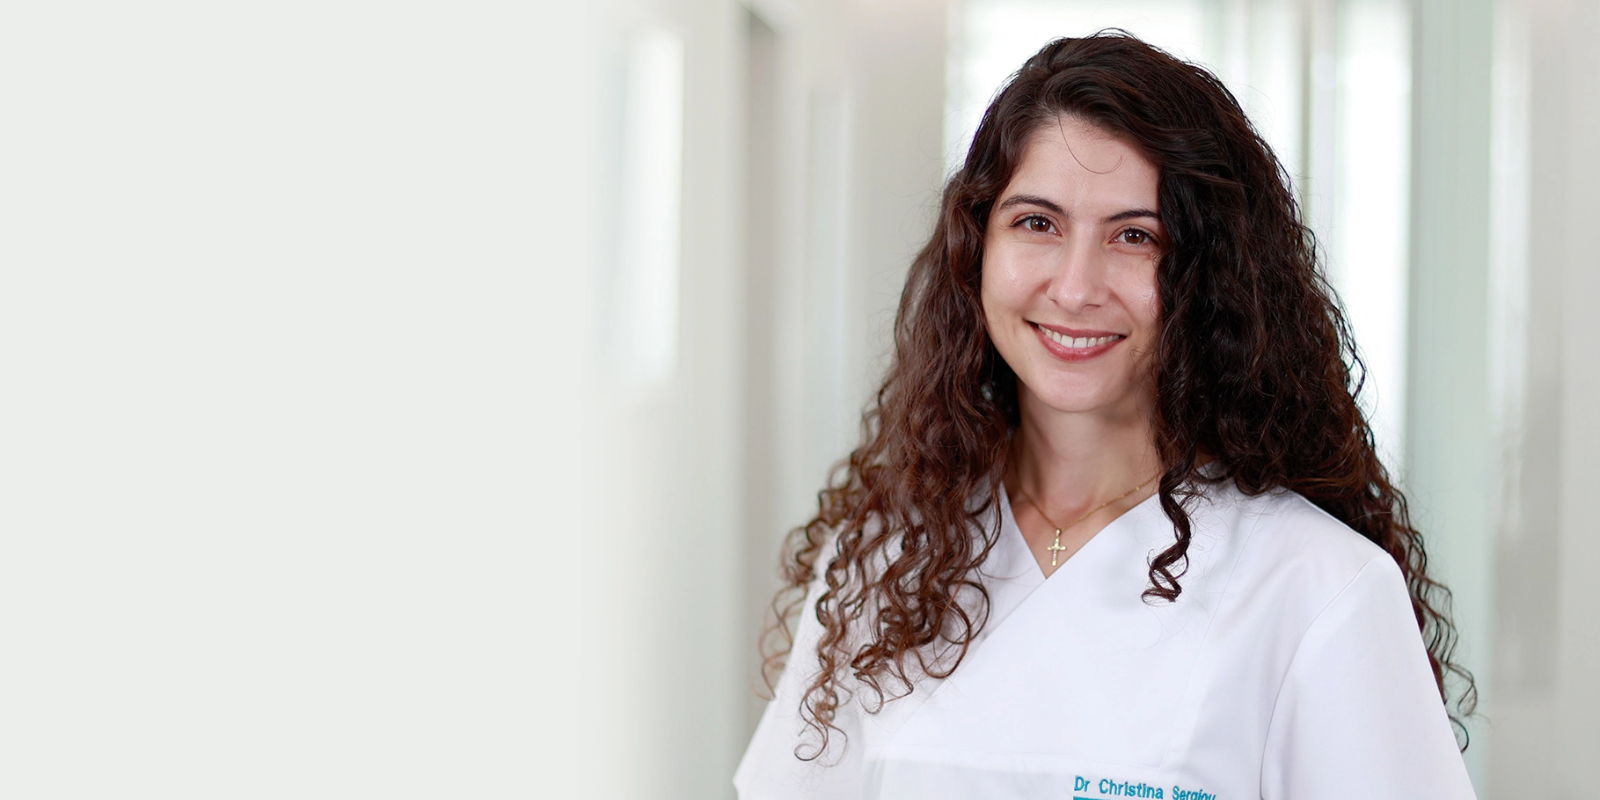 Dr. Christina Sergiou